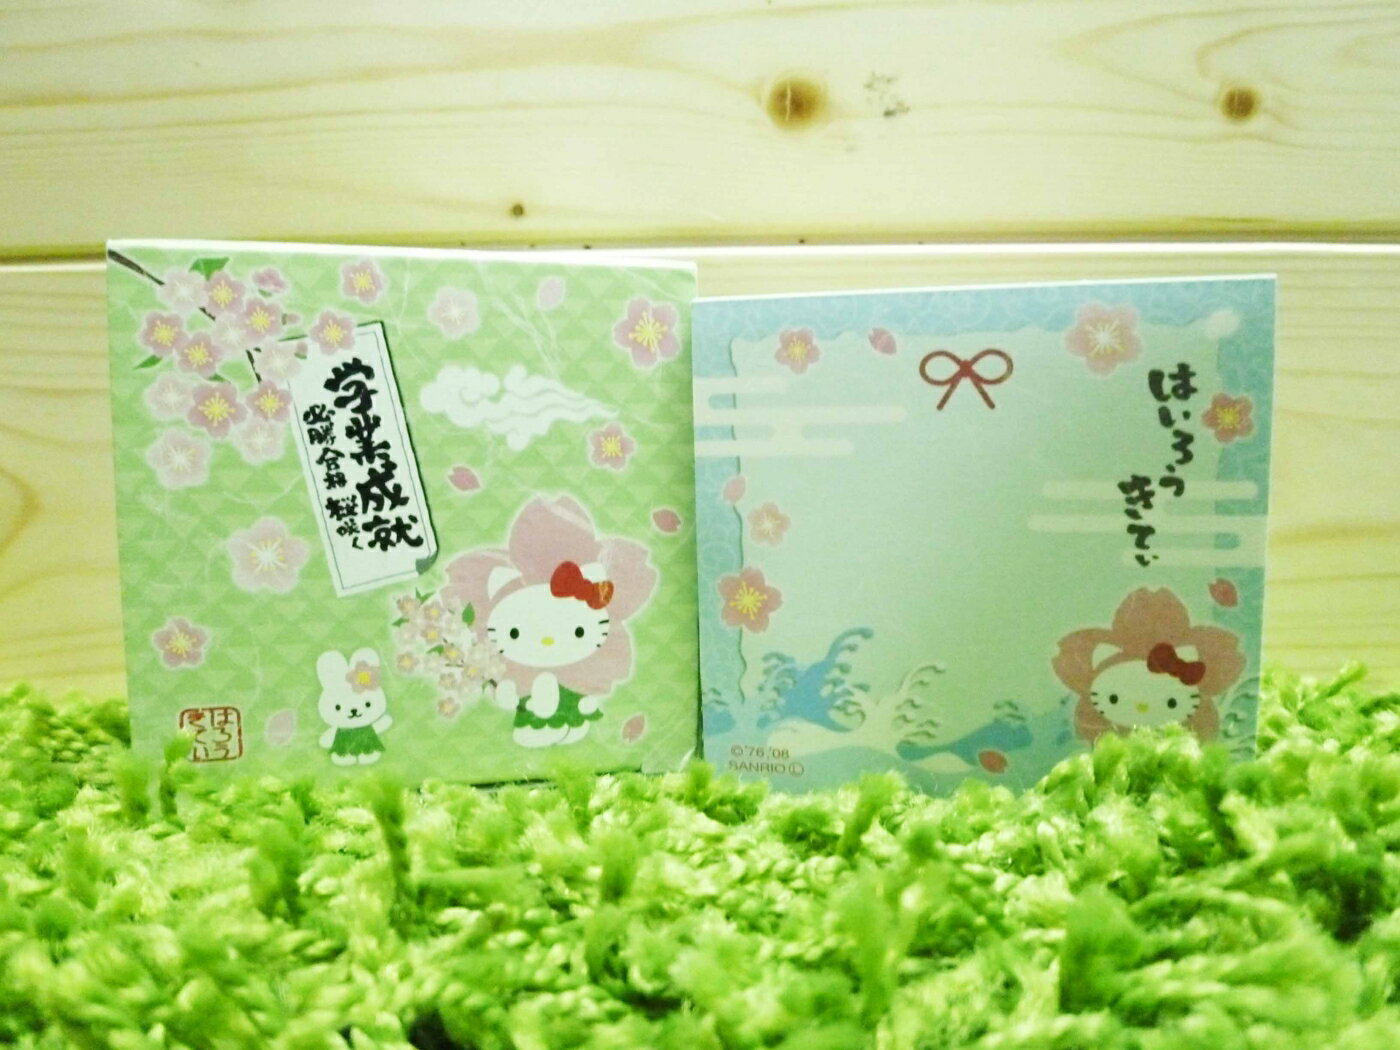 【震撼精品百貨】Hello Kitty 凱蒂貓 便條紙-綠櫻花造型【共1款】 震撼日式精品百貨